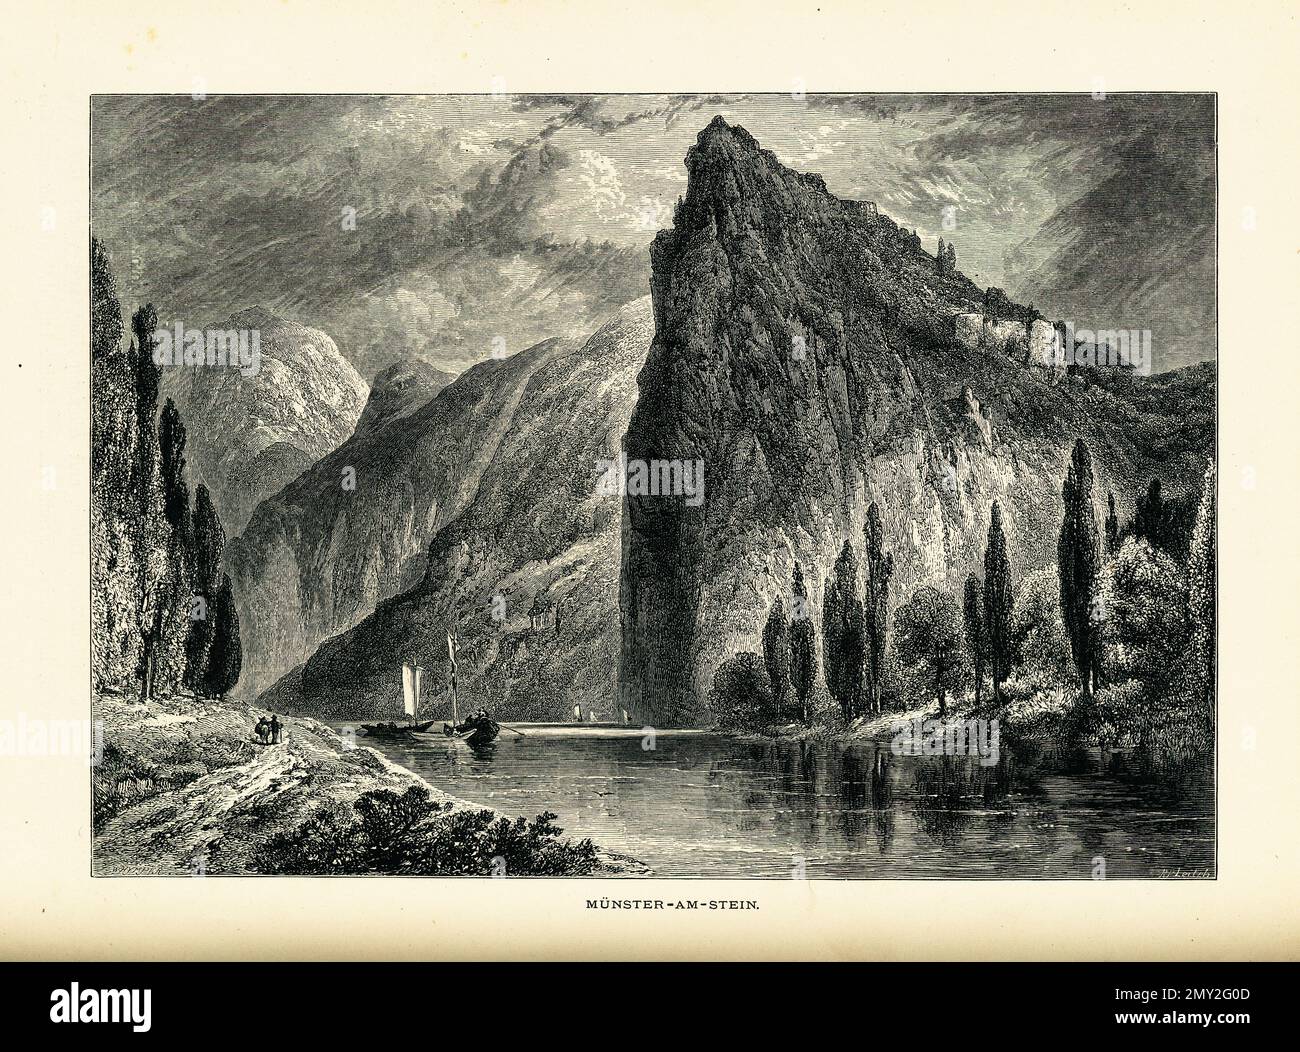 Antica illustrazione raffigurante il fiume Nahe a Bad Munster am Stein-Ebernburg, Germania. Incisione pubblicata in picturesque Europe, Vol. III (Cassell Foto Stock